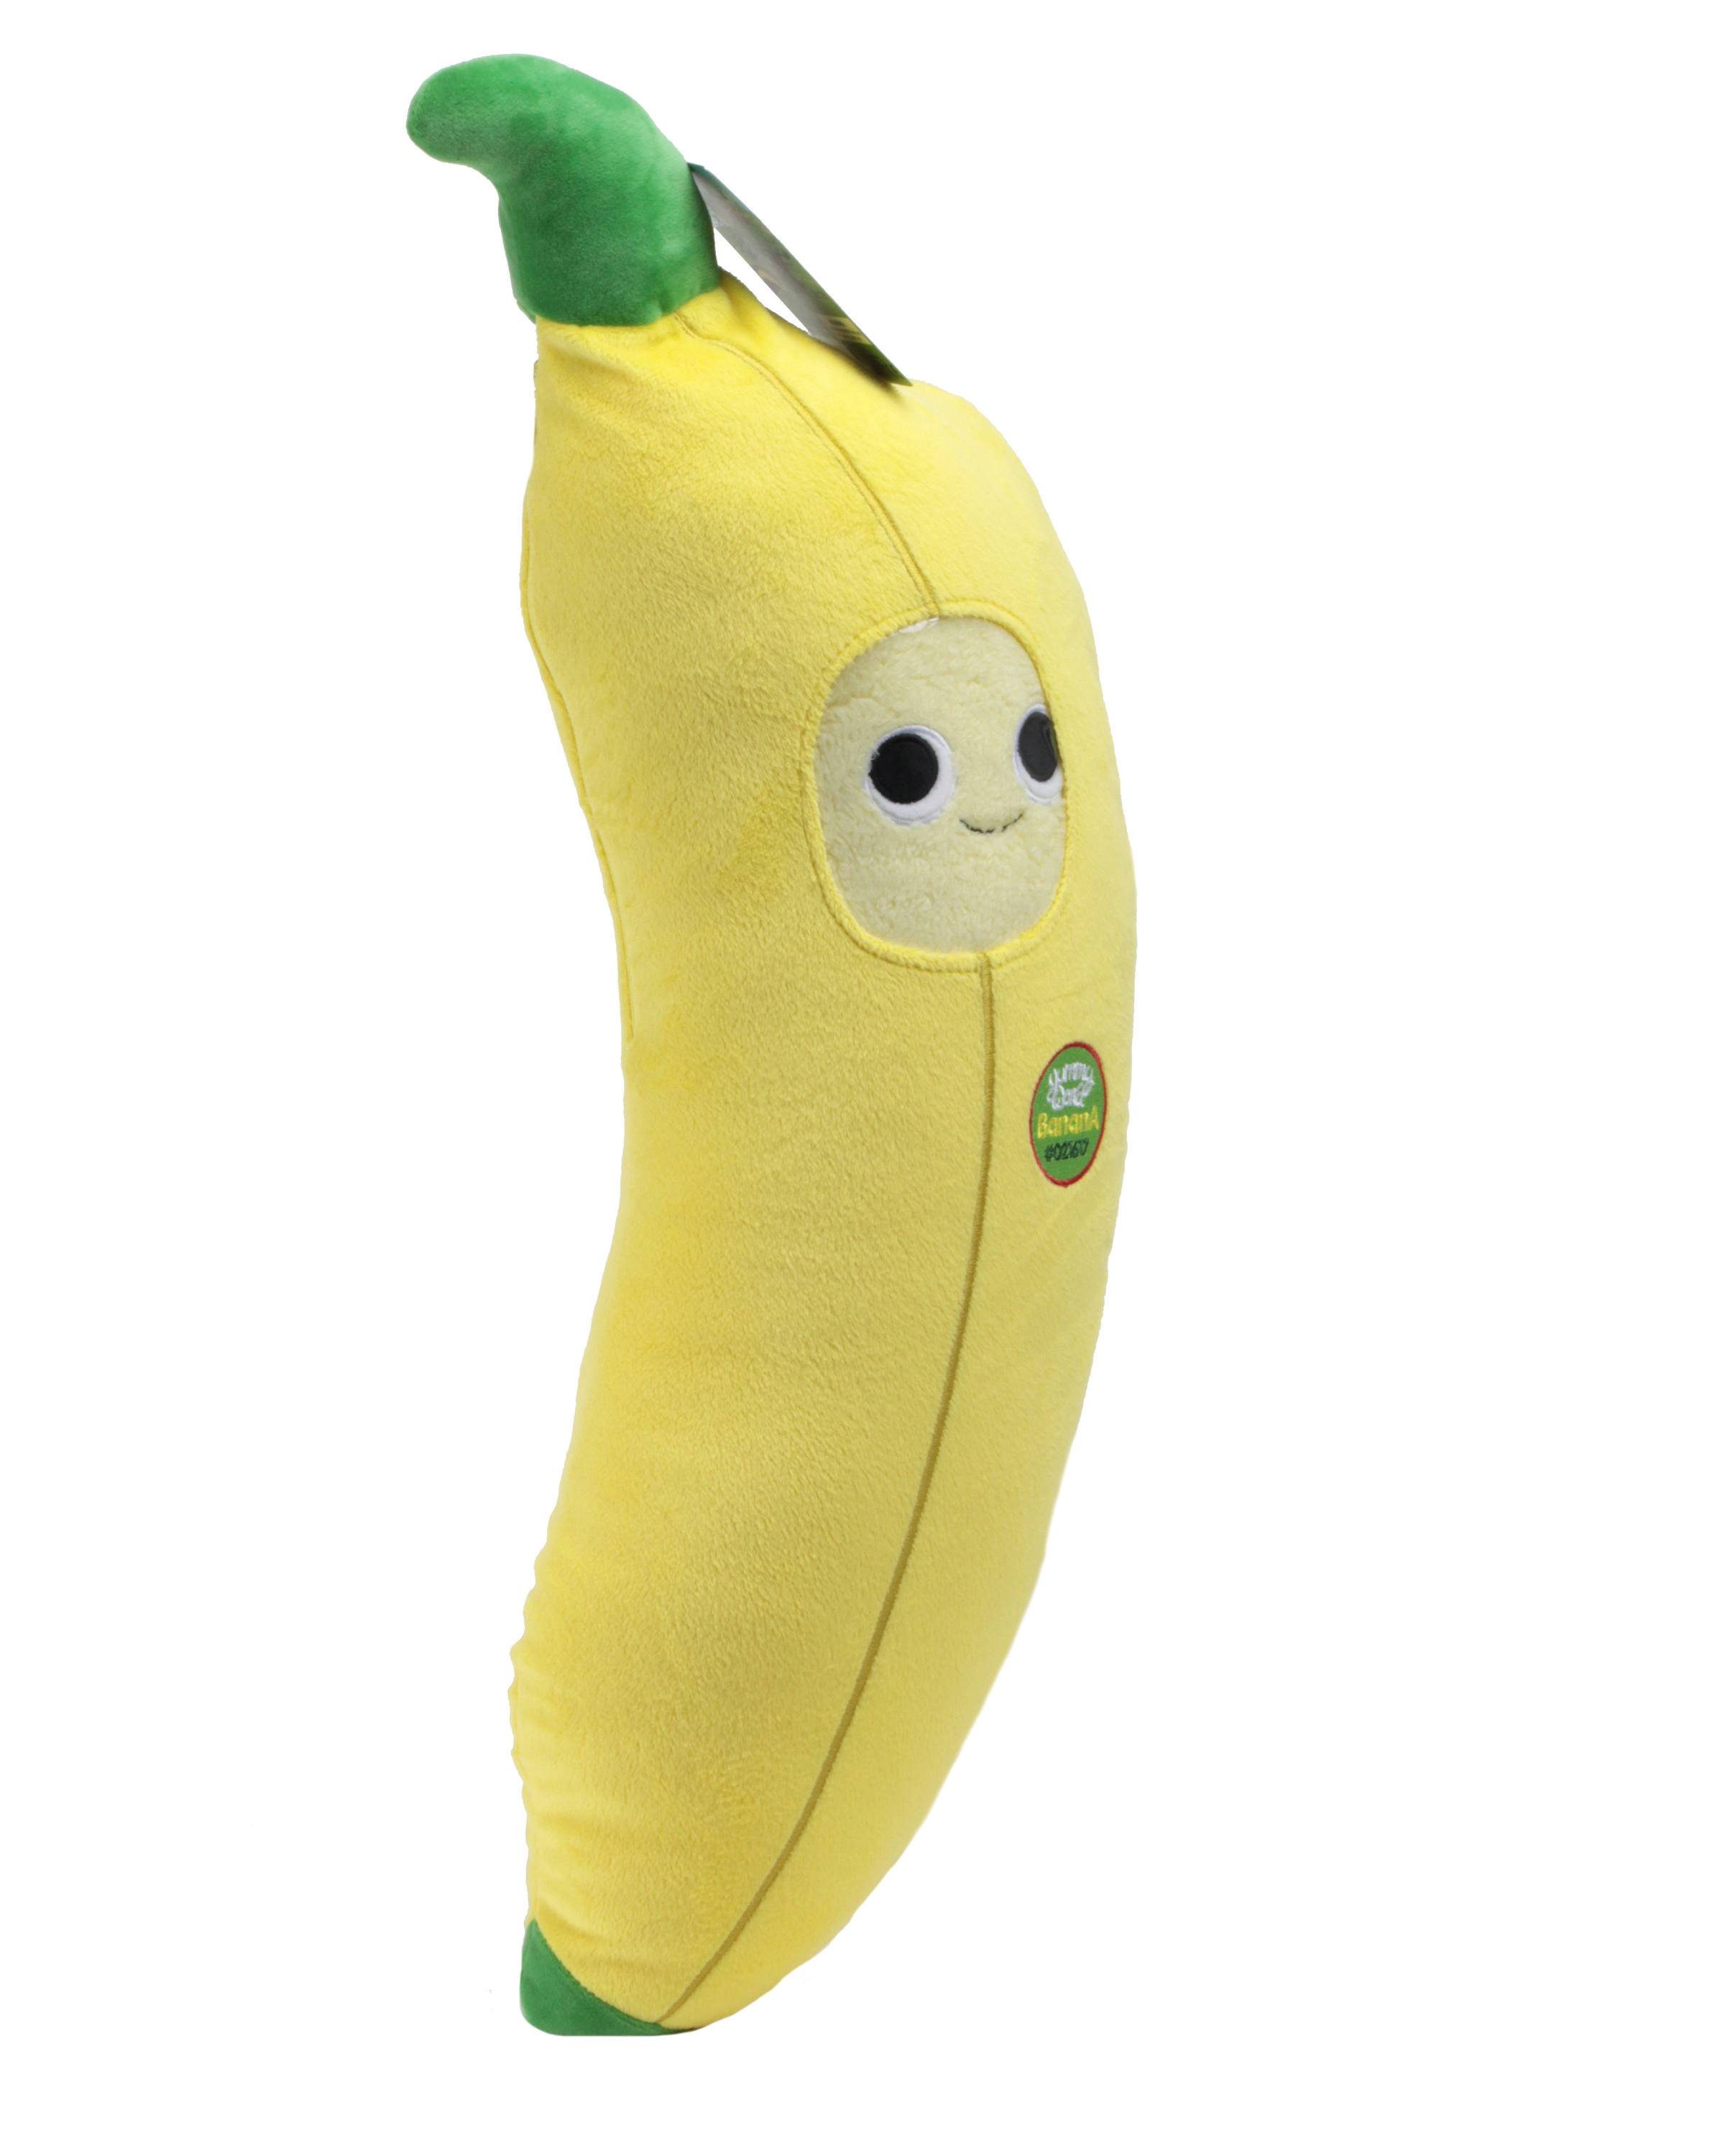 Yummy World Bruce the Banana Interactive Plush by Kidrobot